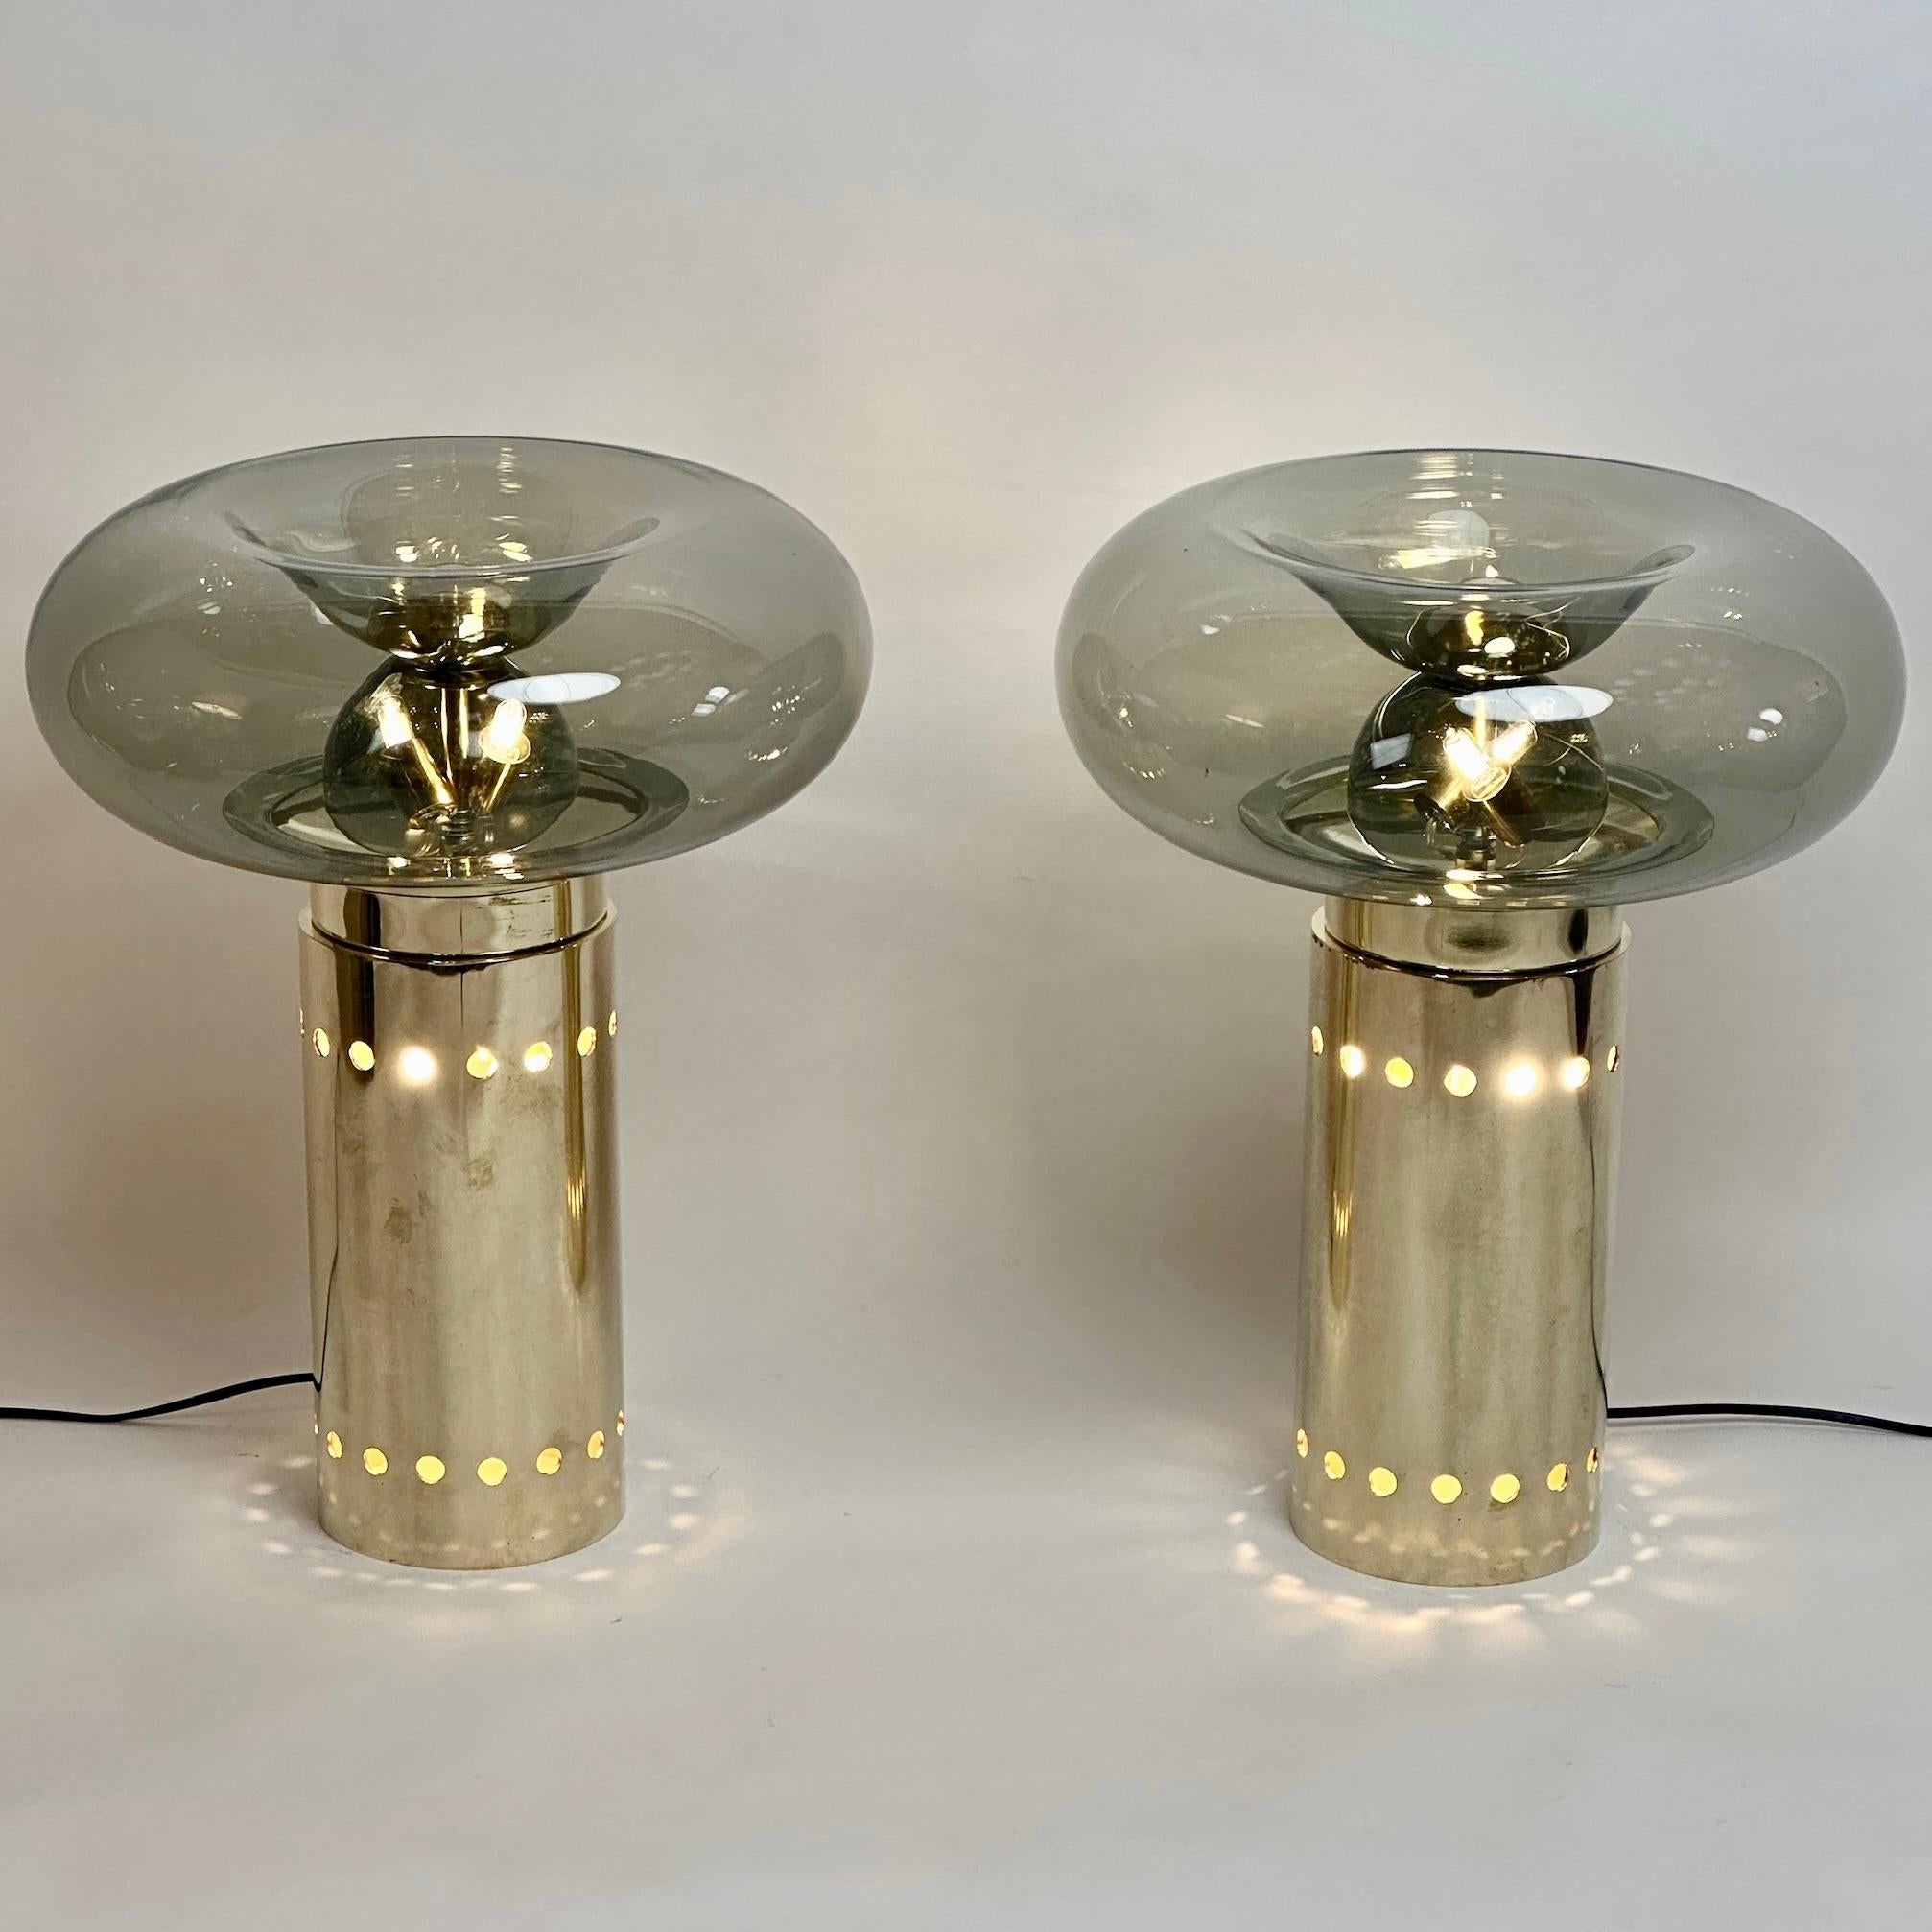 Dieses Paar moderner Tischlampen mit Diffusoren aus mundgeblasenem, grauem Murano-Kunstglas passt in fast jede Umgebung und kann sowohl im Wohn- als auch im Schlafzimmer aufgestellt werden.
Das runde Messingunterteil, das einer glatten Säule mit